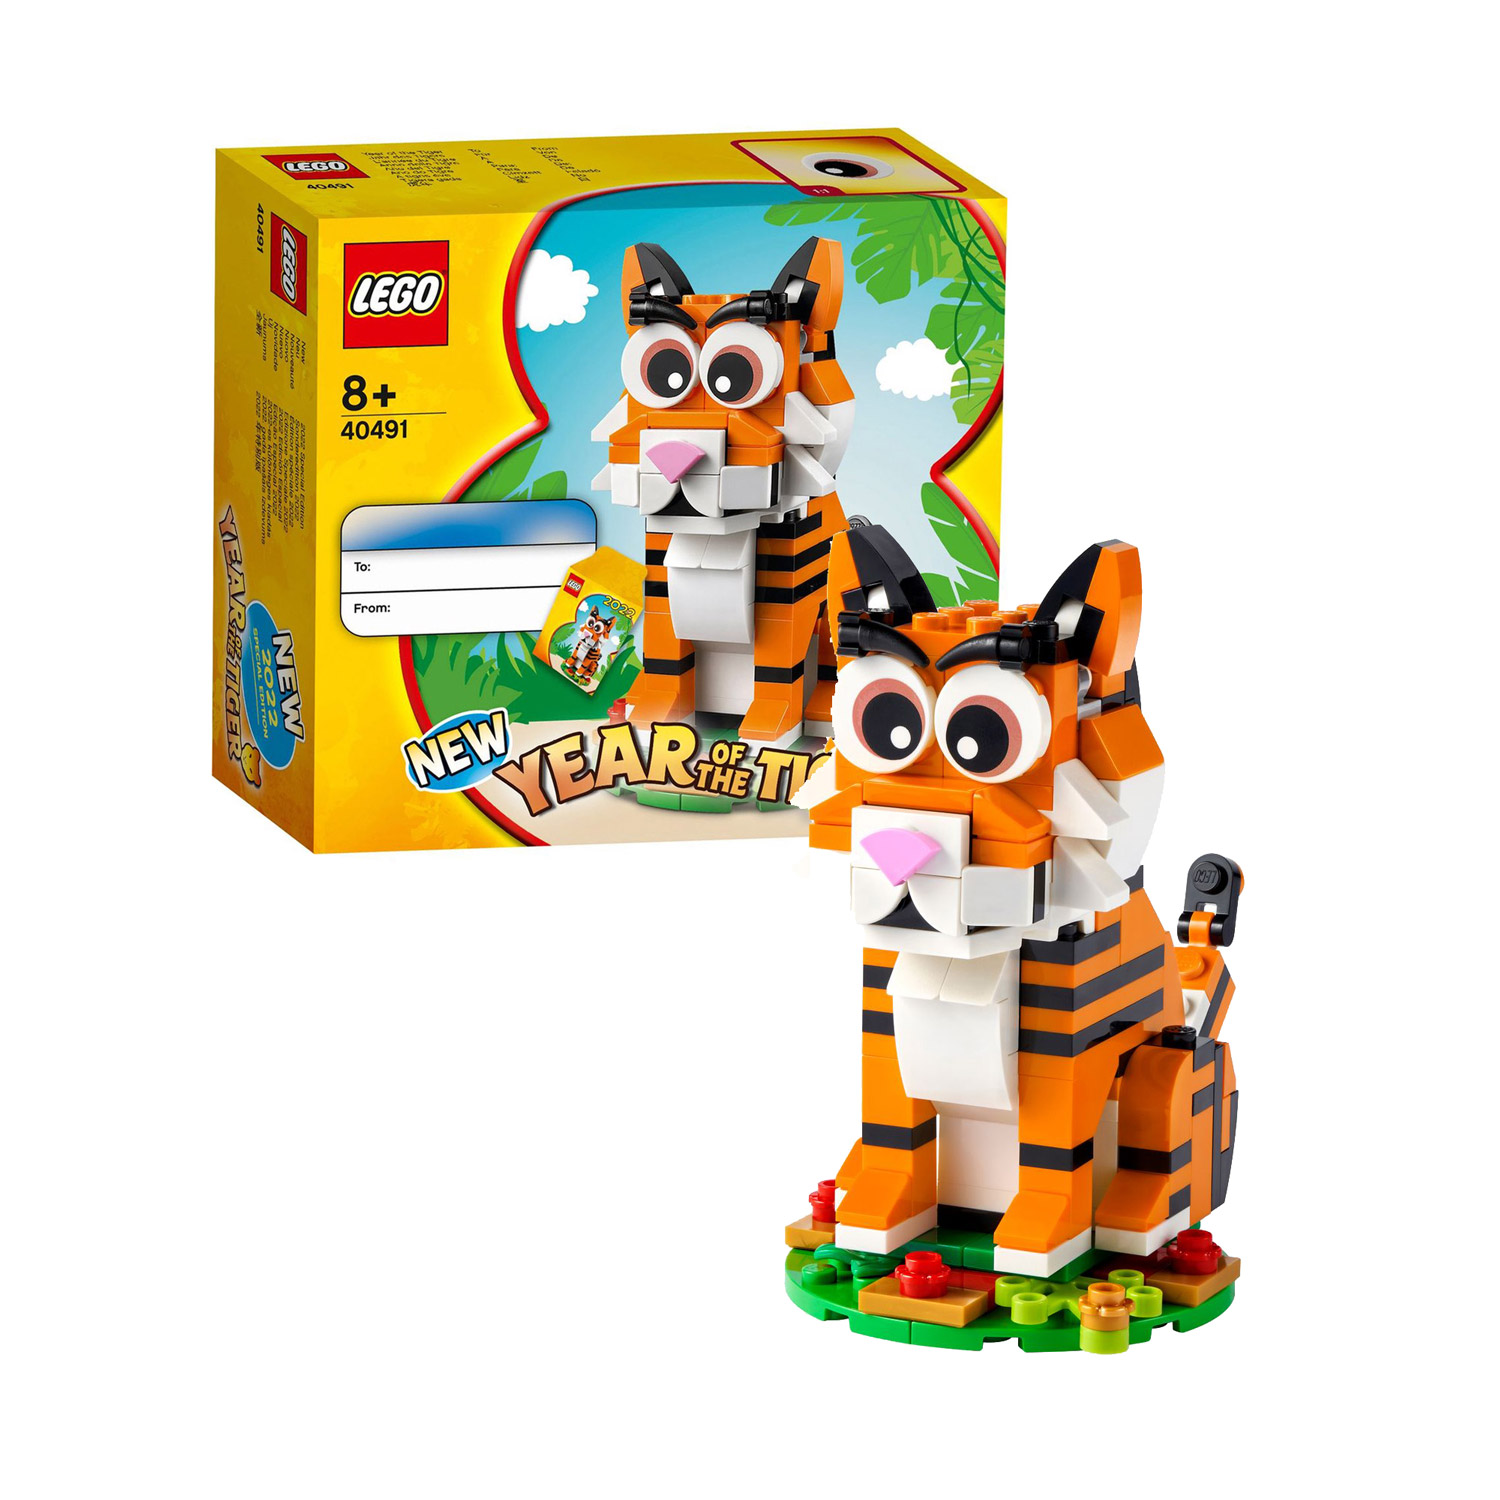 Lego 40491 Het Jaar van de Tijger kopen? | Lobbes Speelgoed